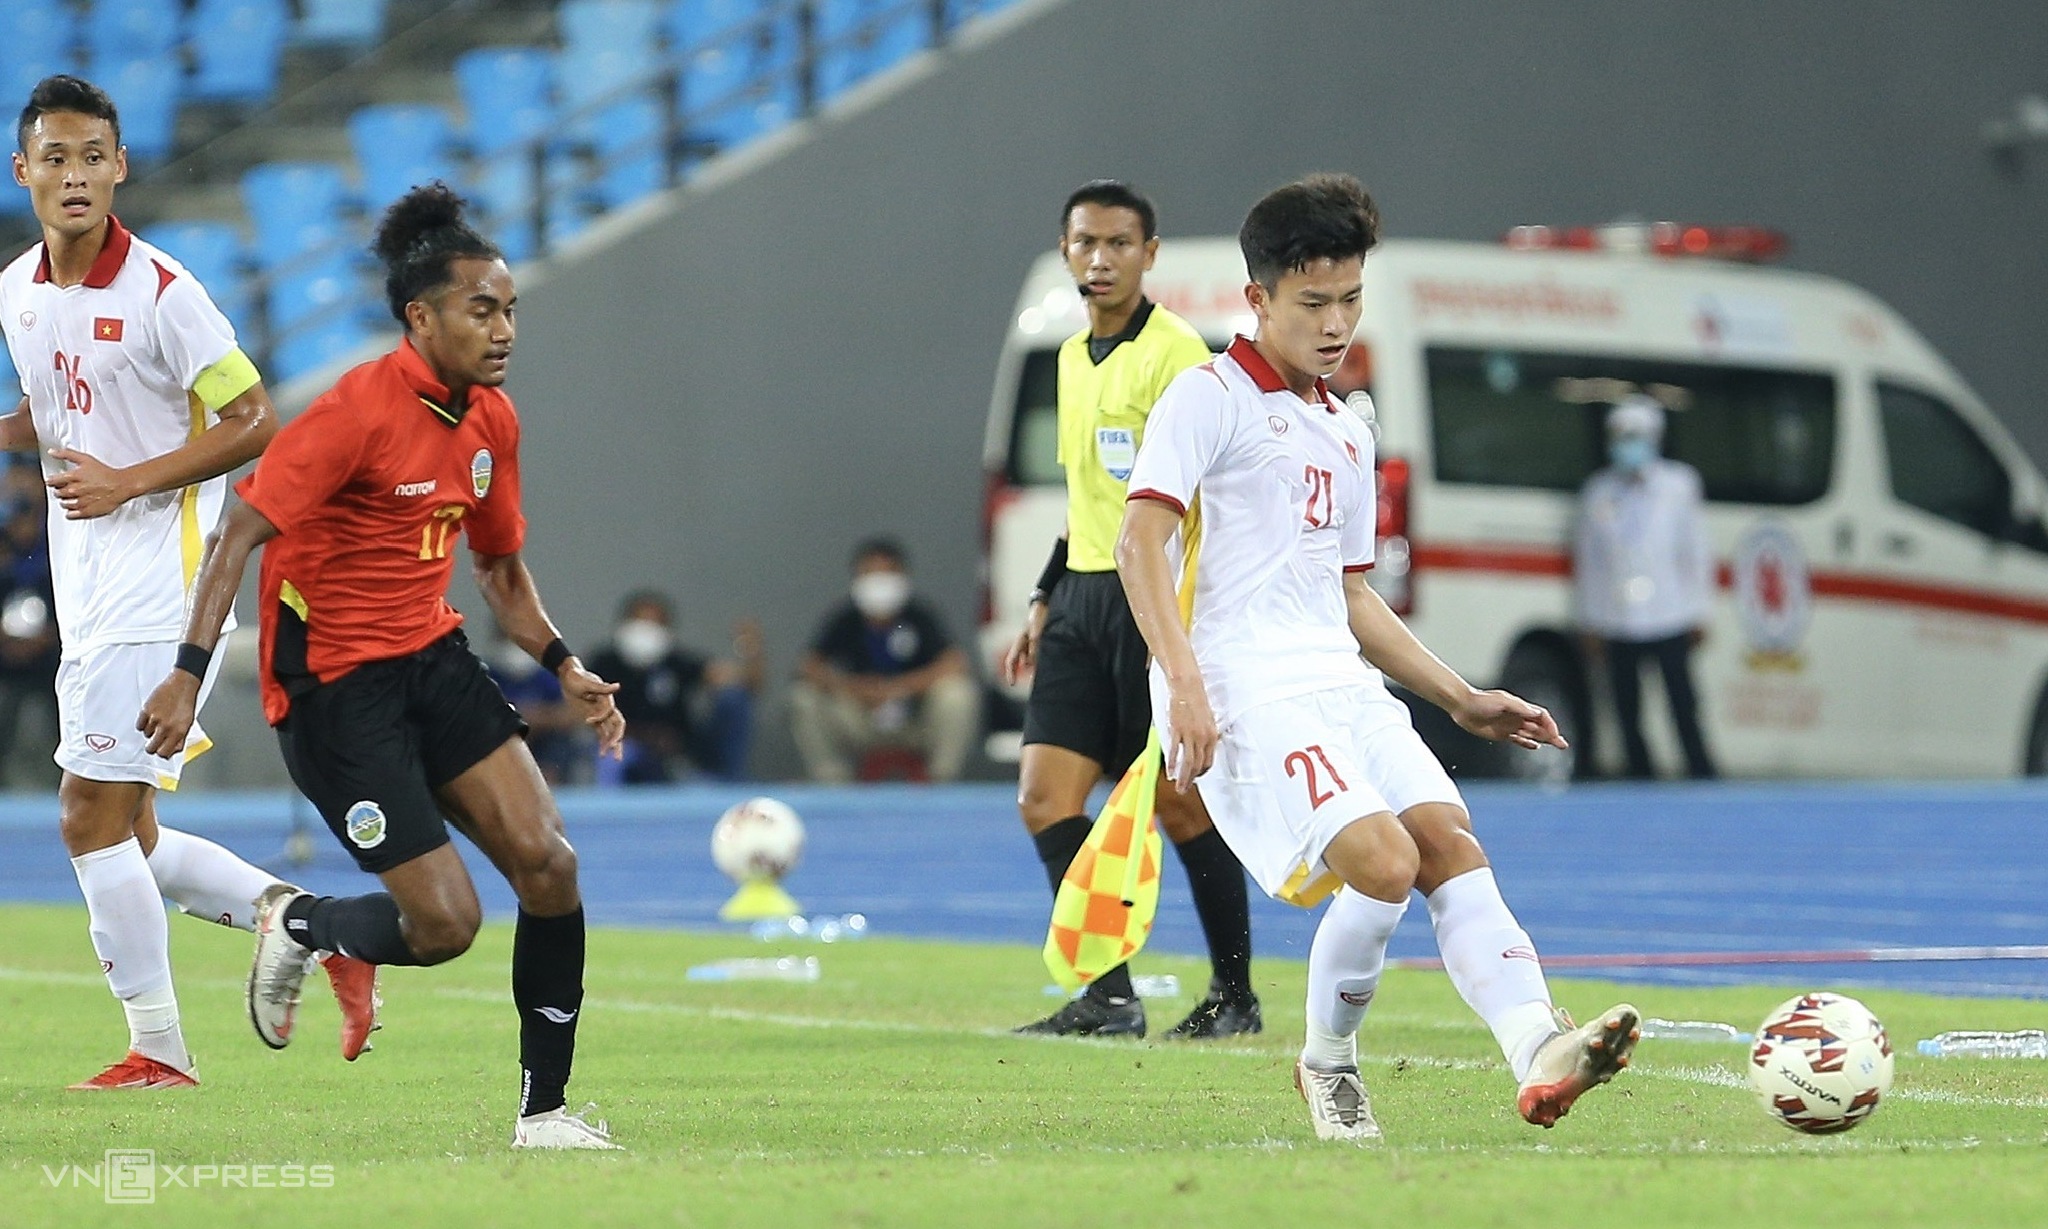 Lịch sử đối đầu U23 Việt Nam vs U23 Timor Leste: 2 đội từng gặp nhau 5 lần